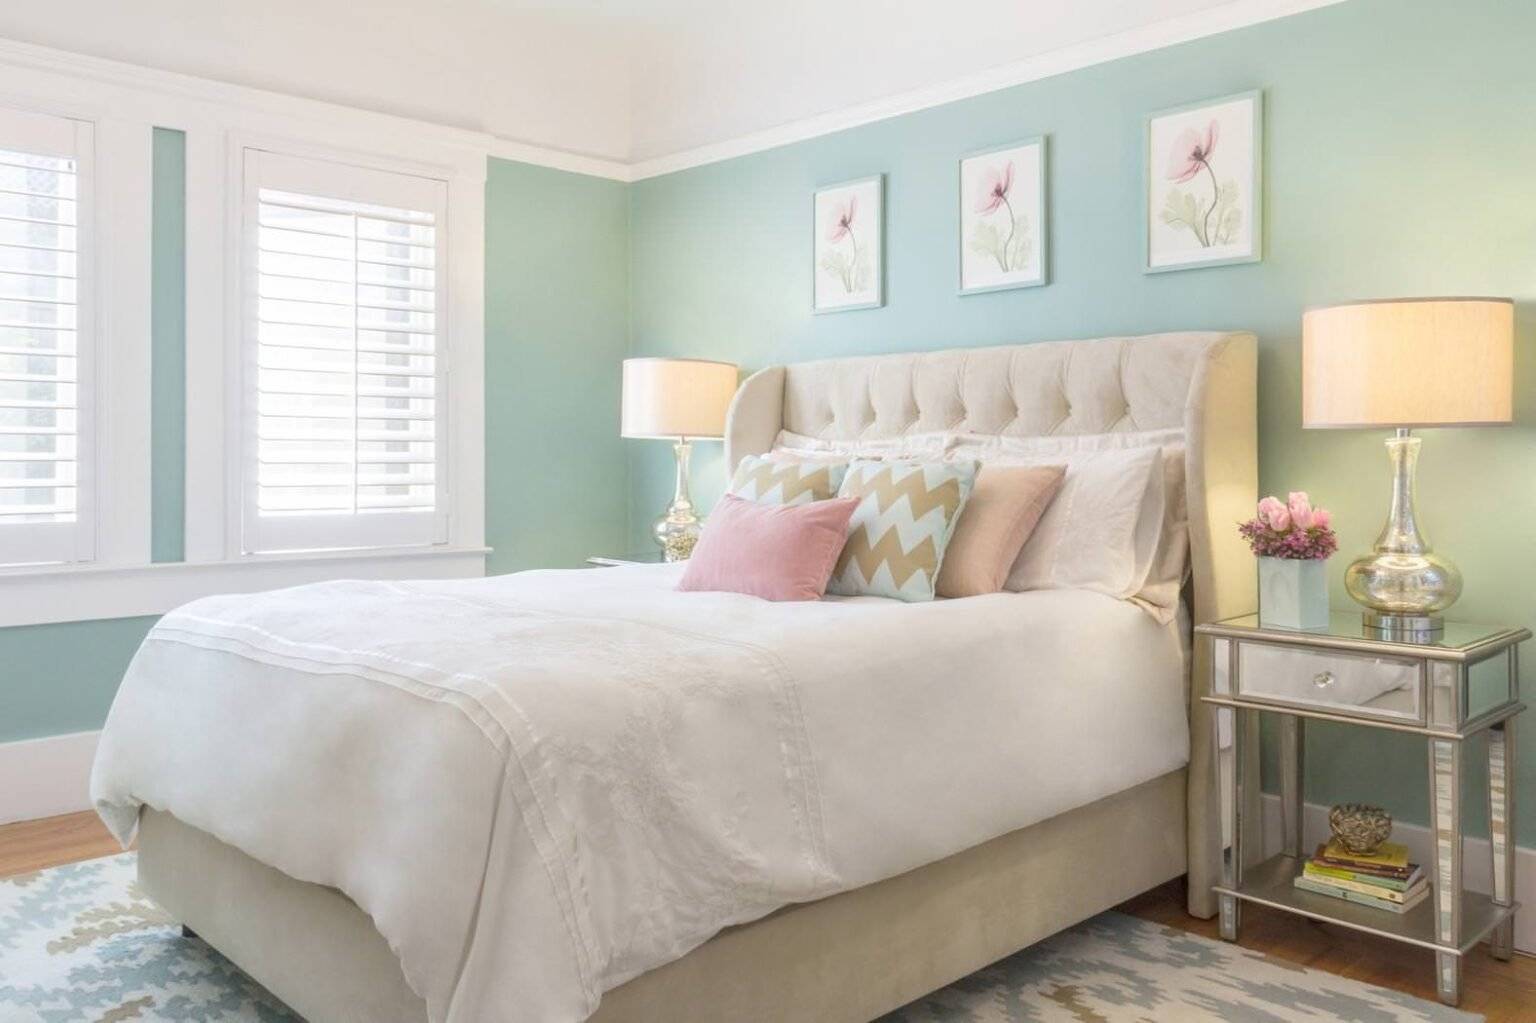 Лучшие цвета для спальни, какие они? фото примеры сочетания цветов в интерьере спальни, обзор пастельных и ярких тонов, успокаивающих и благоприятных по феншую